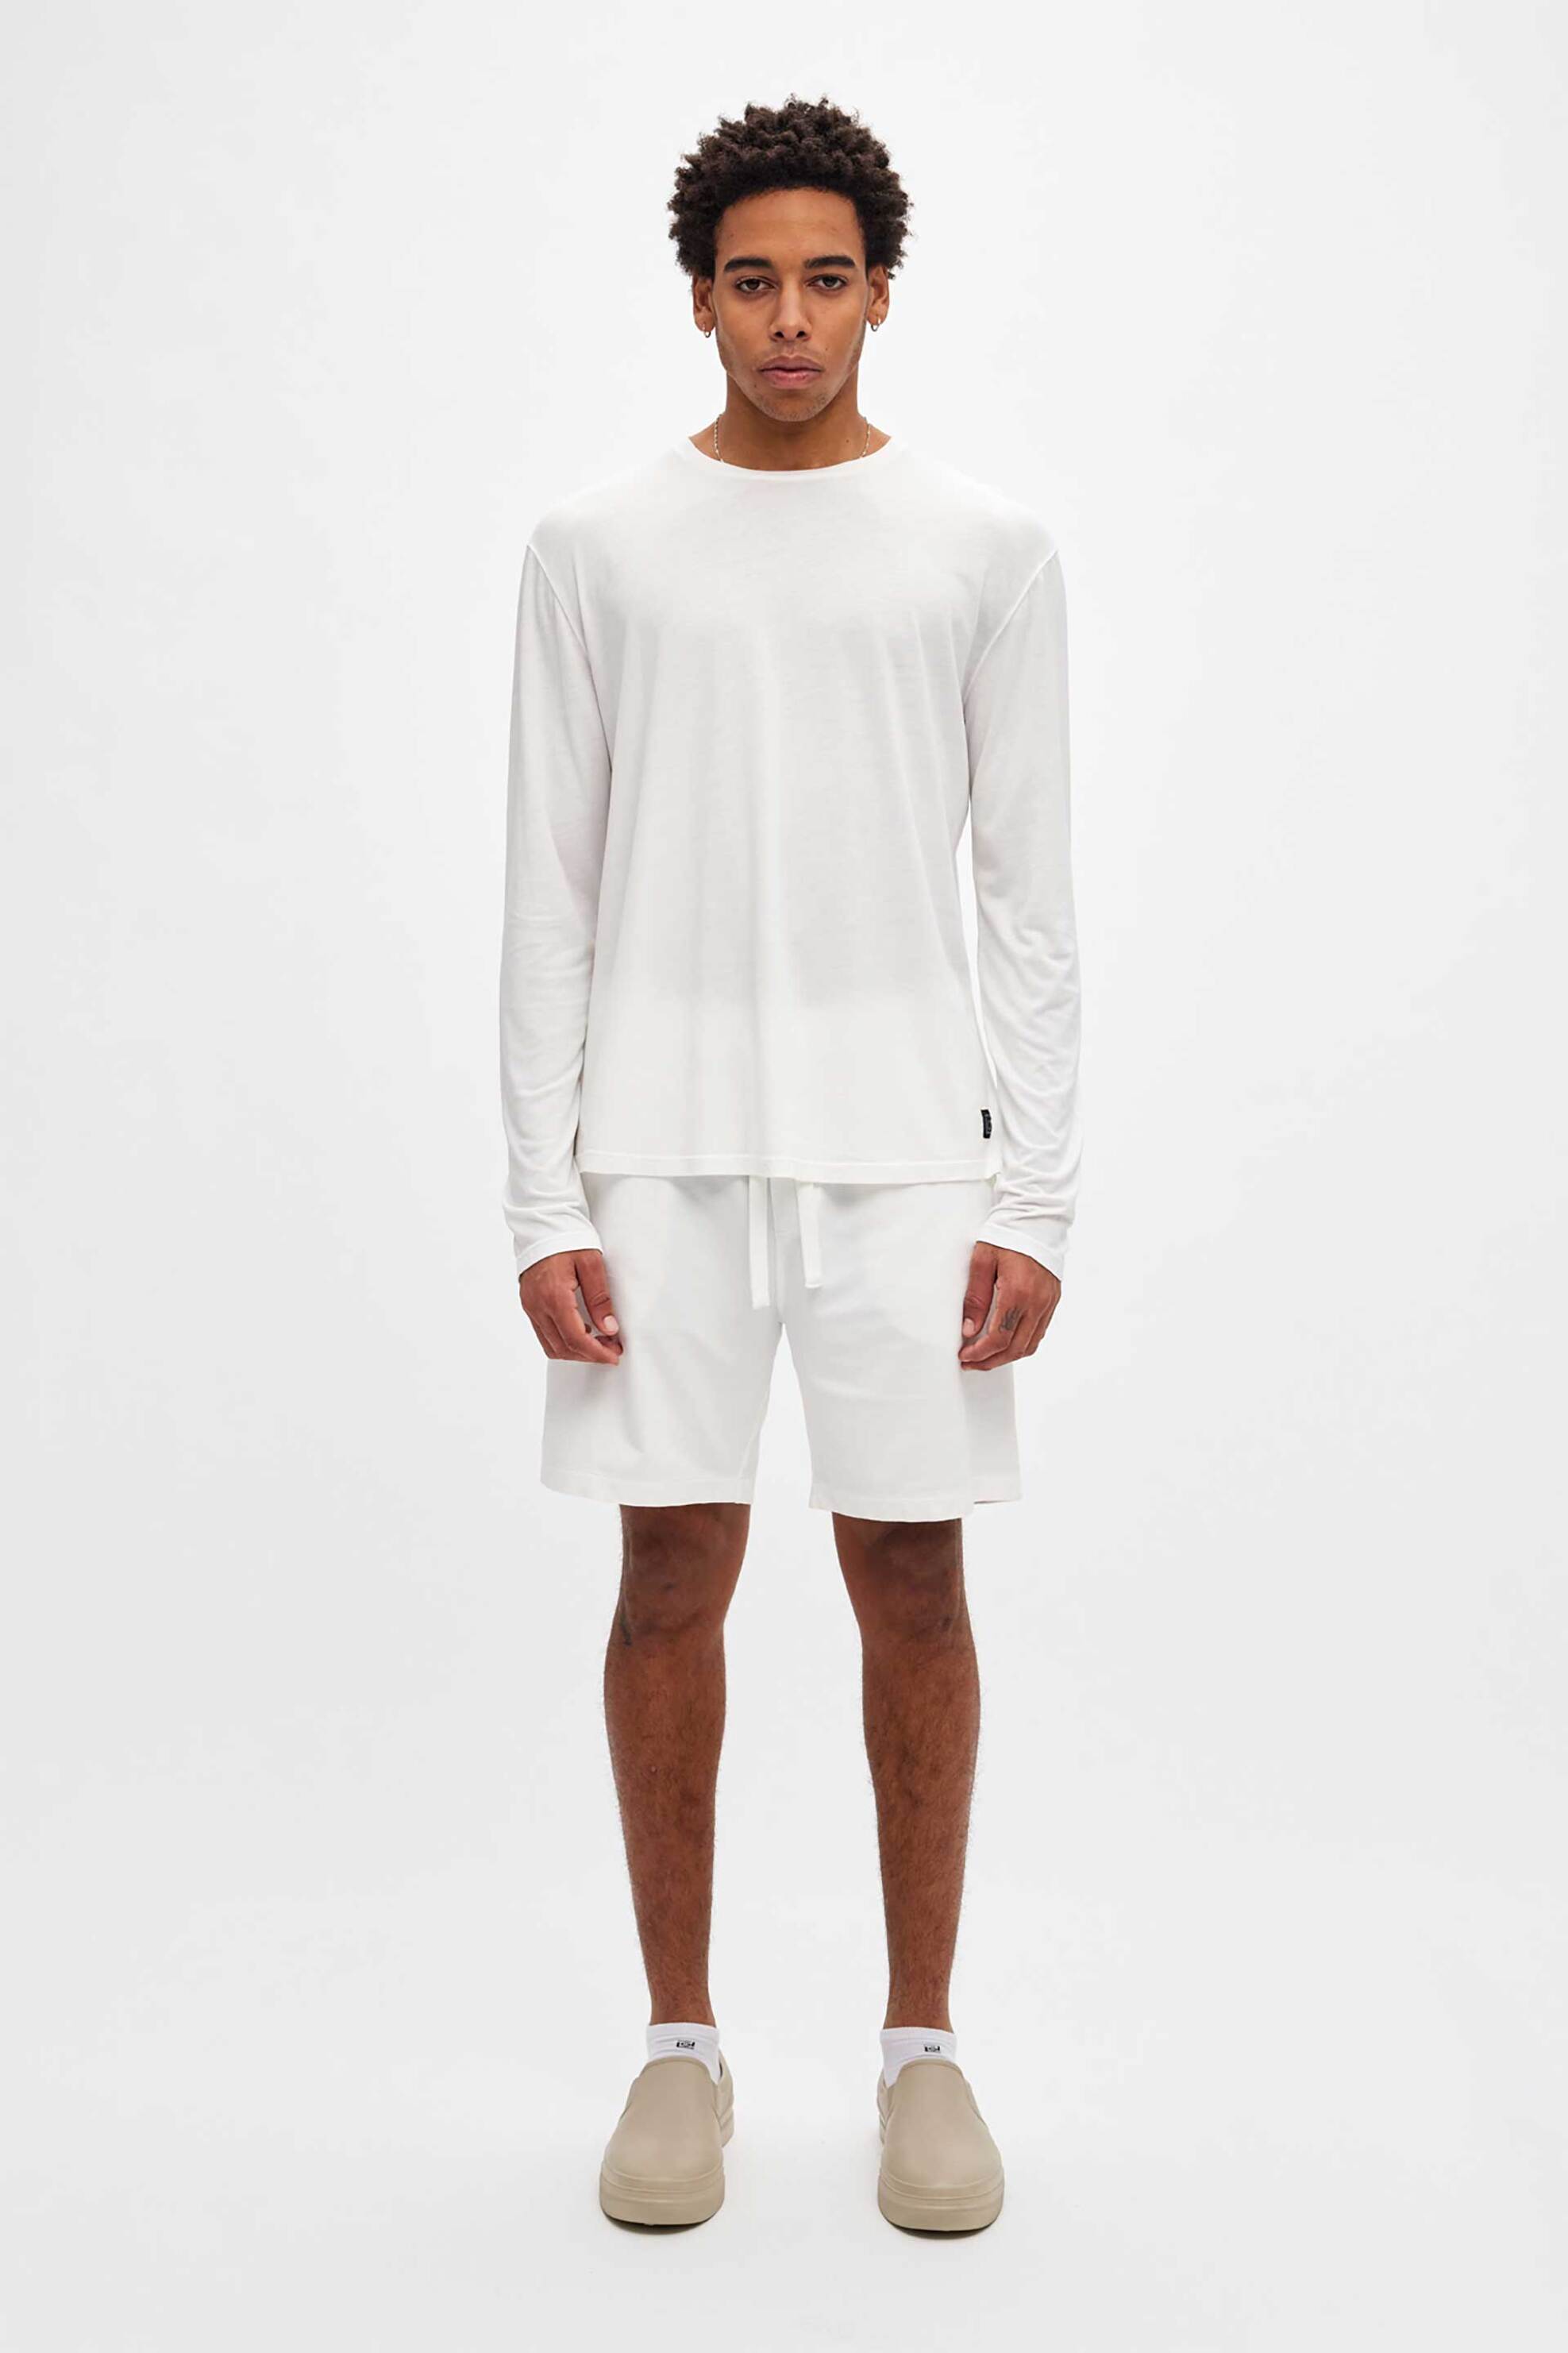 Ανδρική Μόδα > Ανδρικά Ρούχα > Ανδρικές Μπλούζες > Ανδρικές Μπλούζες Μακρυμάνικες Dirty Laundry ανδρική μακρυμάνικη μπλούζα Regular Fit - DLML000150 Λευκό